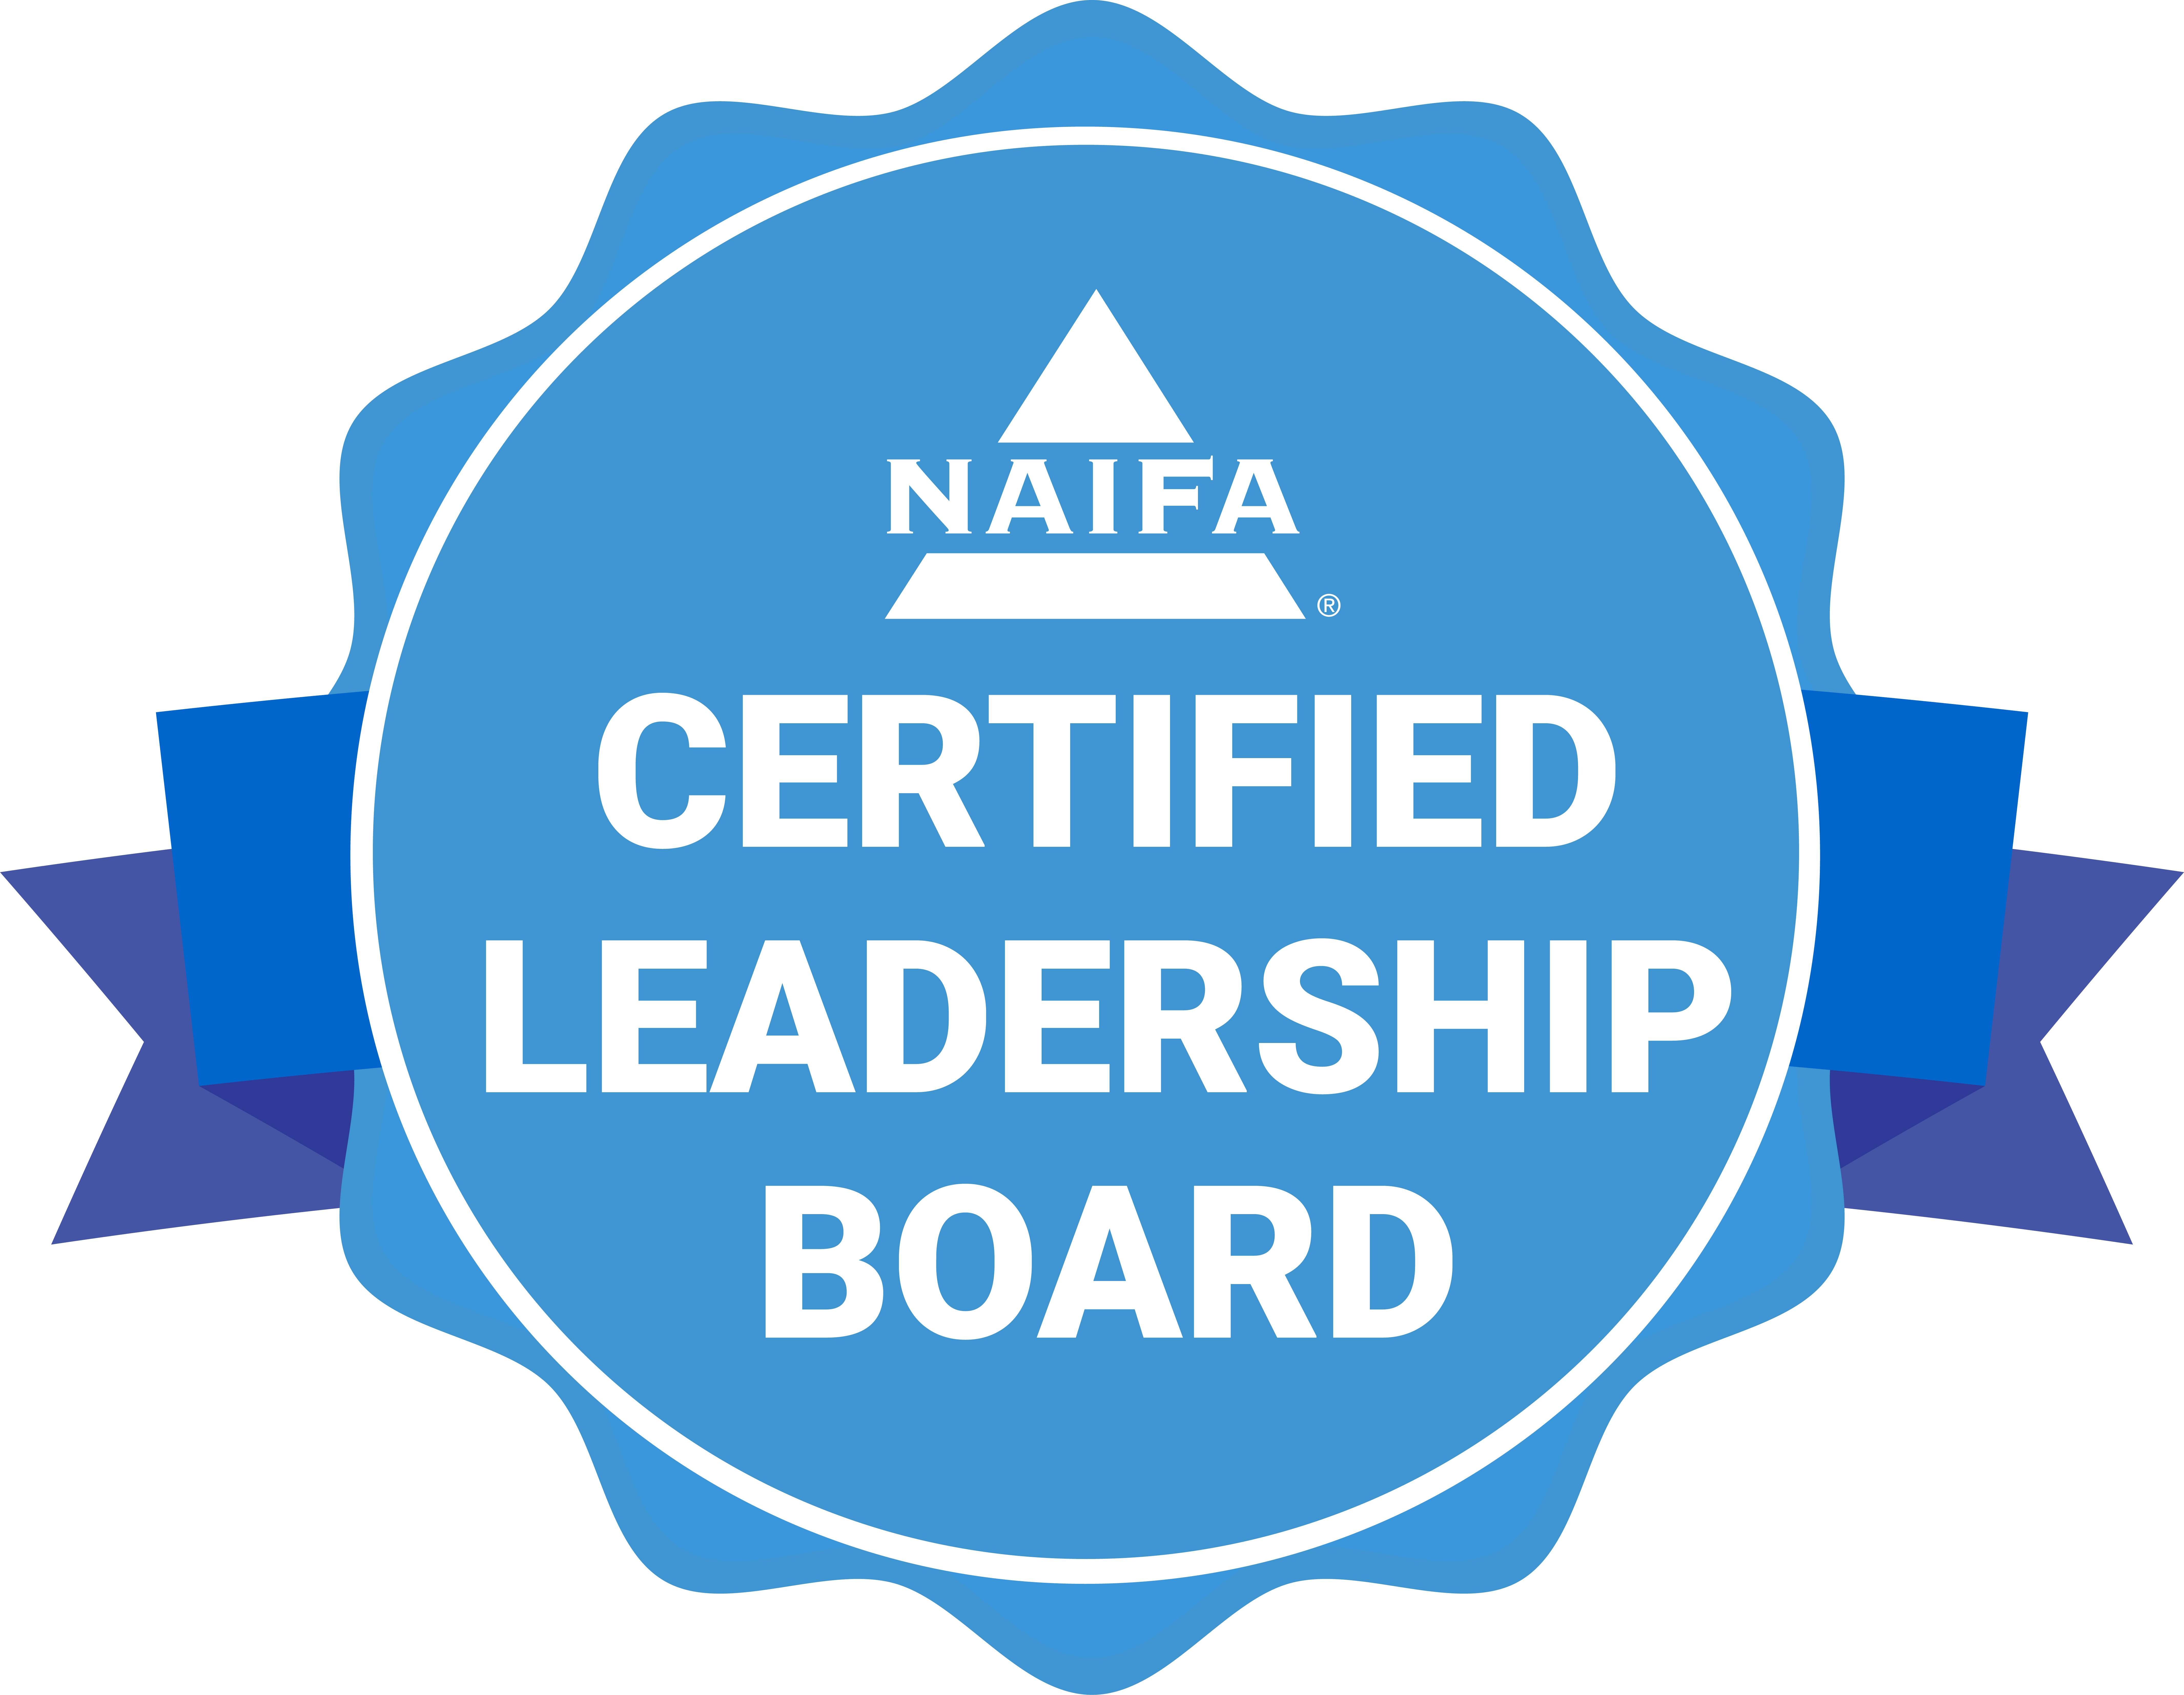 Certified Leadership Board-Blue-1